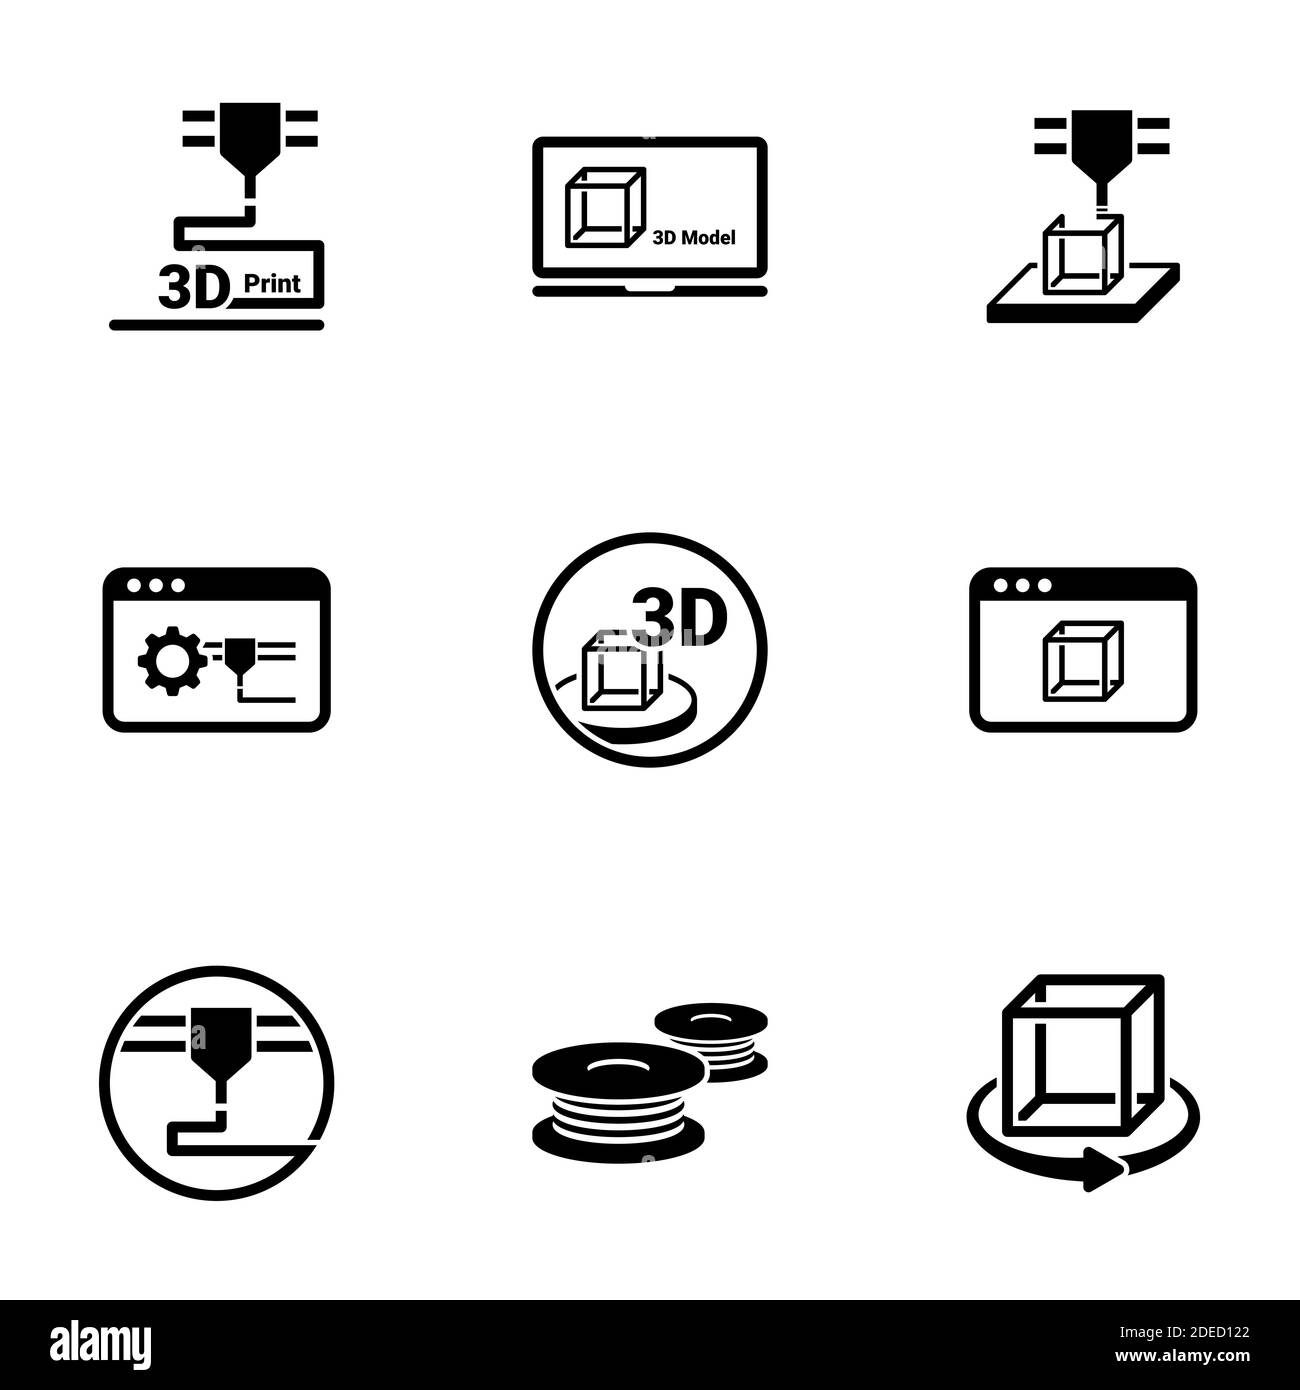 Insieme di icone semplici su un tema 3D Stampa, vettore, disegno, collezione, piatto, segno, simbolo, elemento, oggetto, illustrazione, isolato. Sfondo bianco Illustrazione Vettoriale